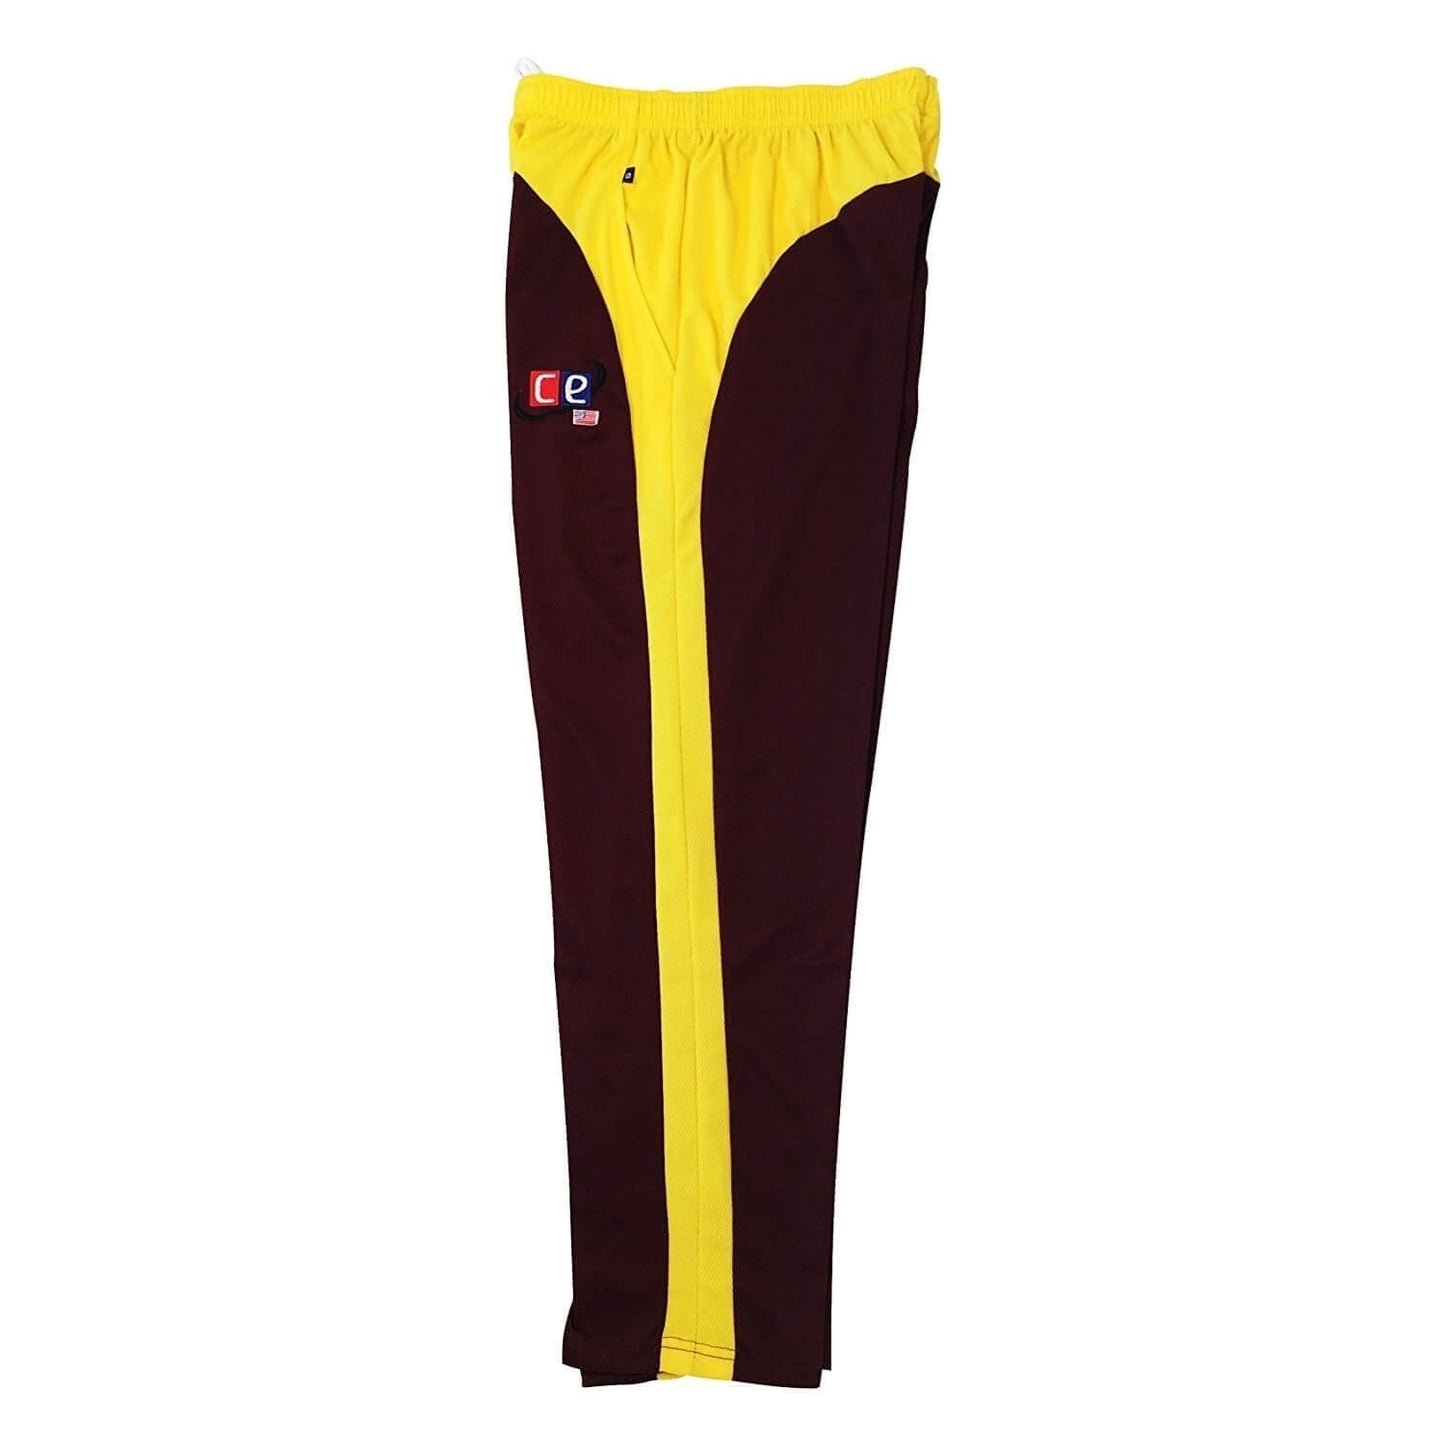 Colored Cricket Uniform West Indies Colors Pants